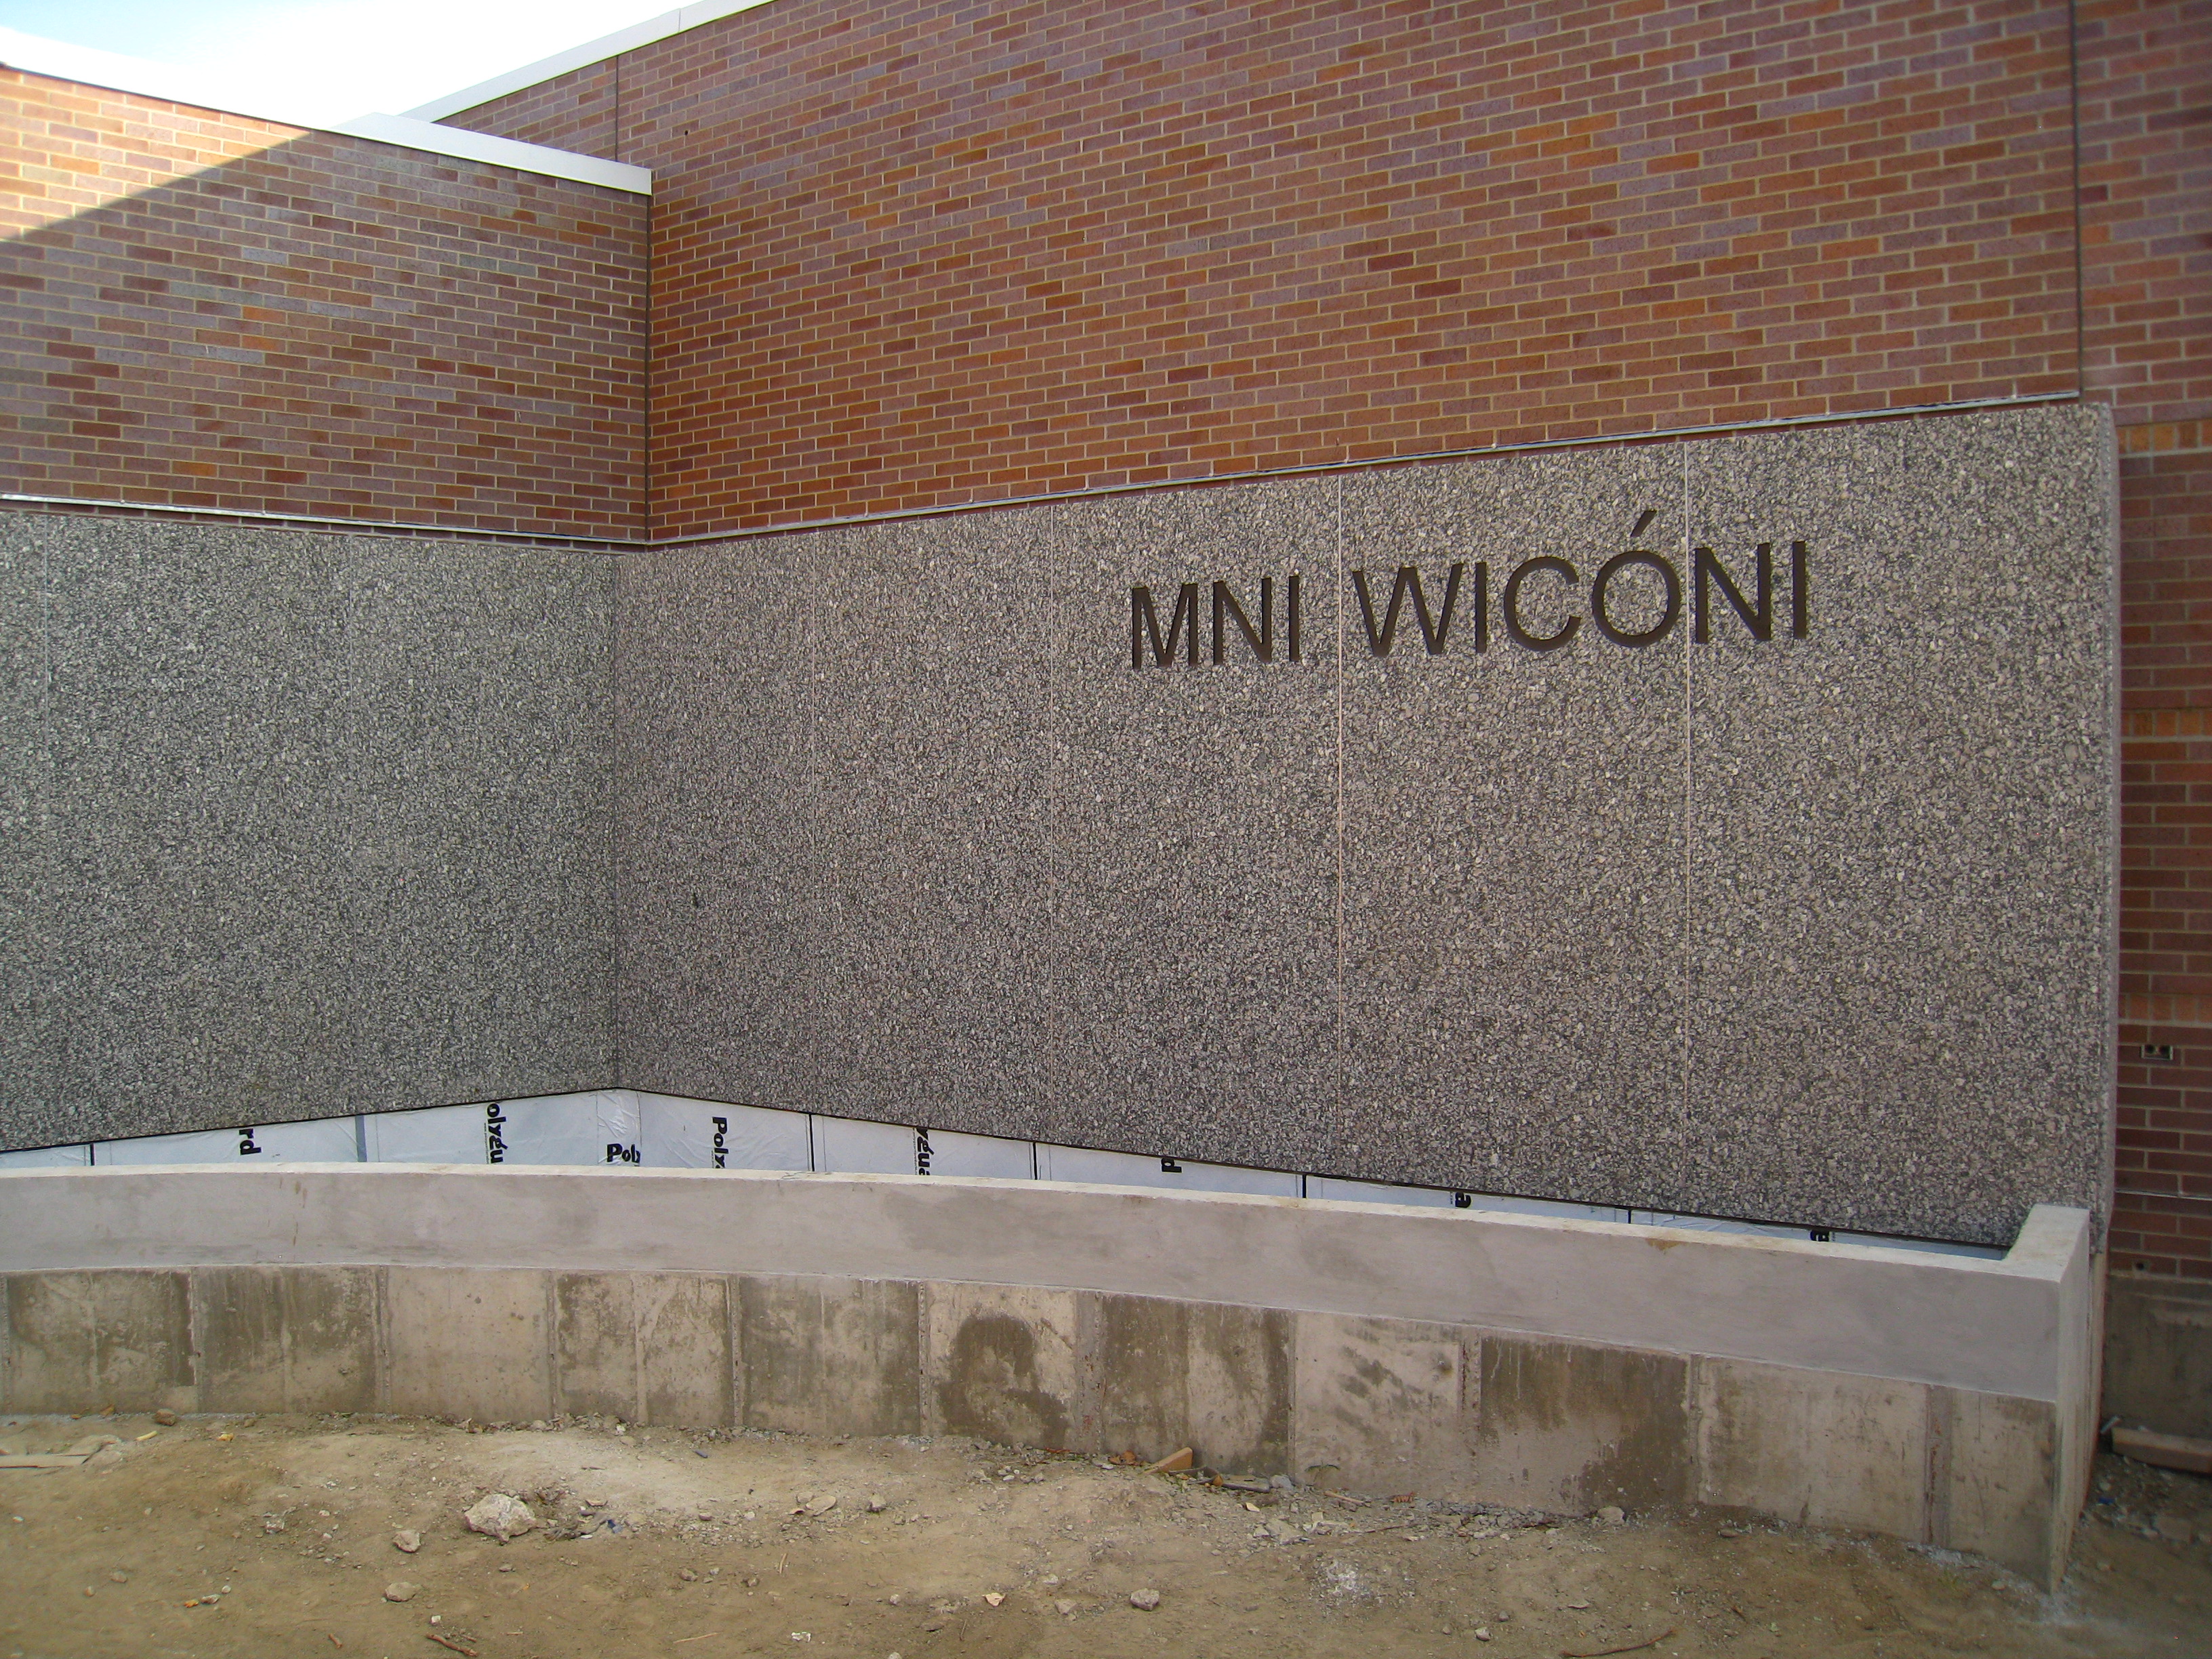 Mni Wićoni - water is life